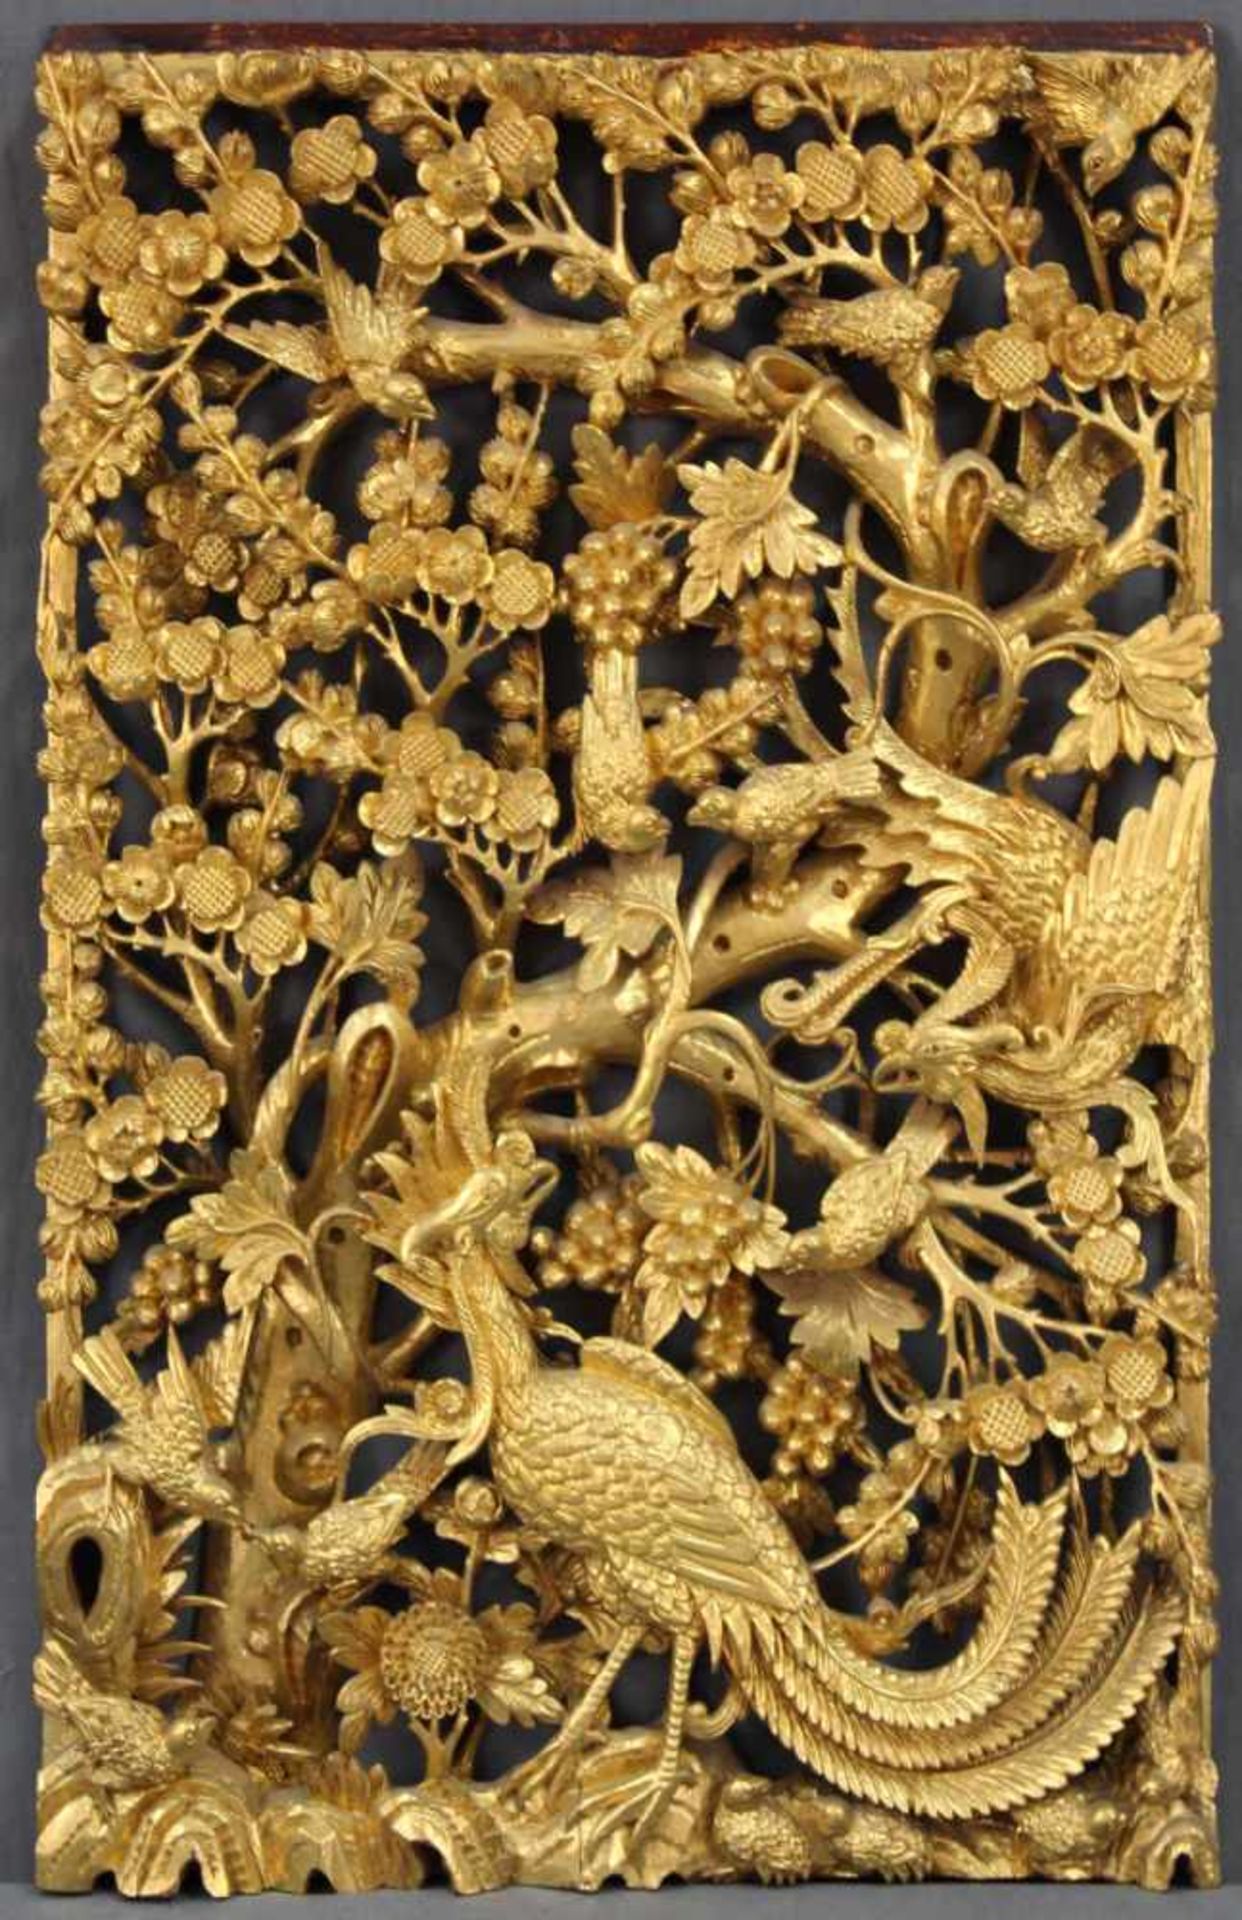 Holzpaneel. Geschnitzt. Goldfarben. Vogeldekor. China alt. 64 cm x 39,5 cm. Wood panel. Carved. Gold